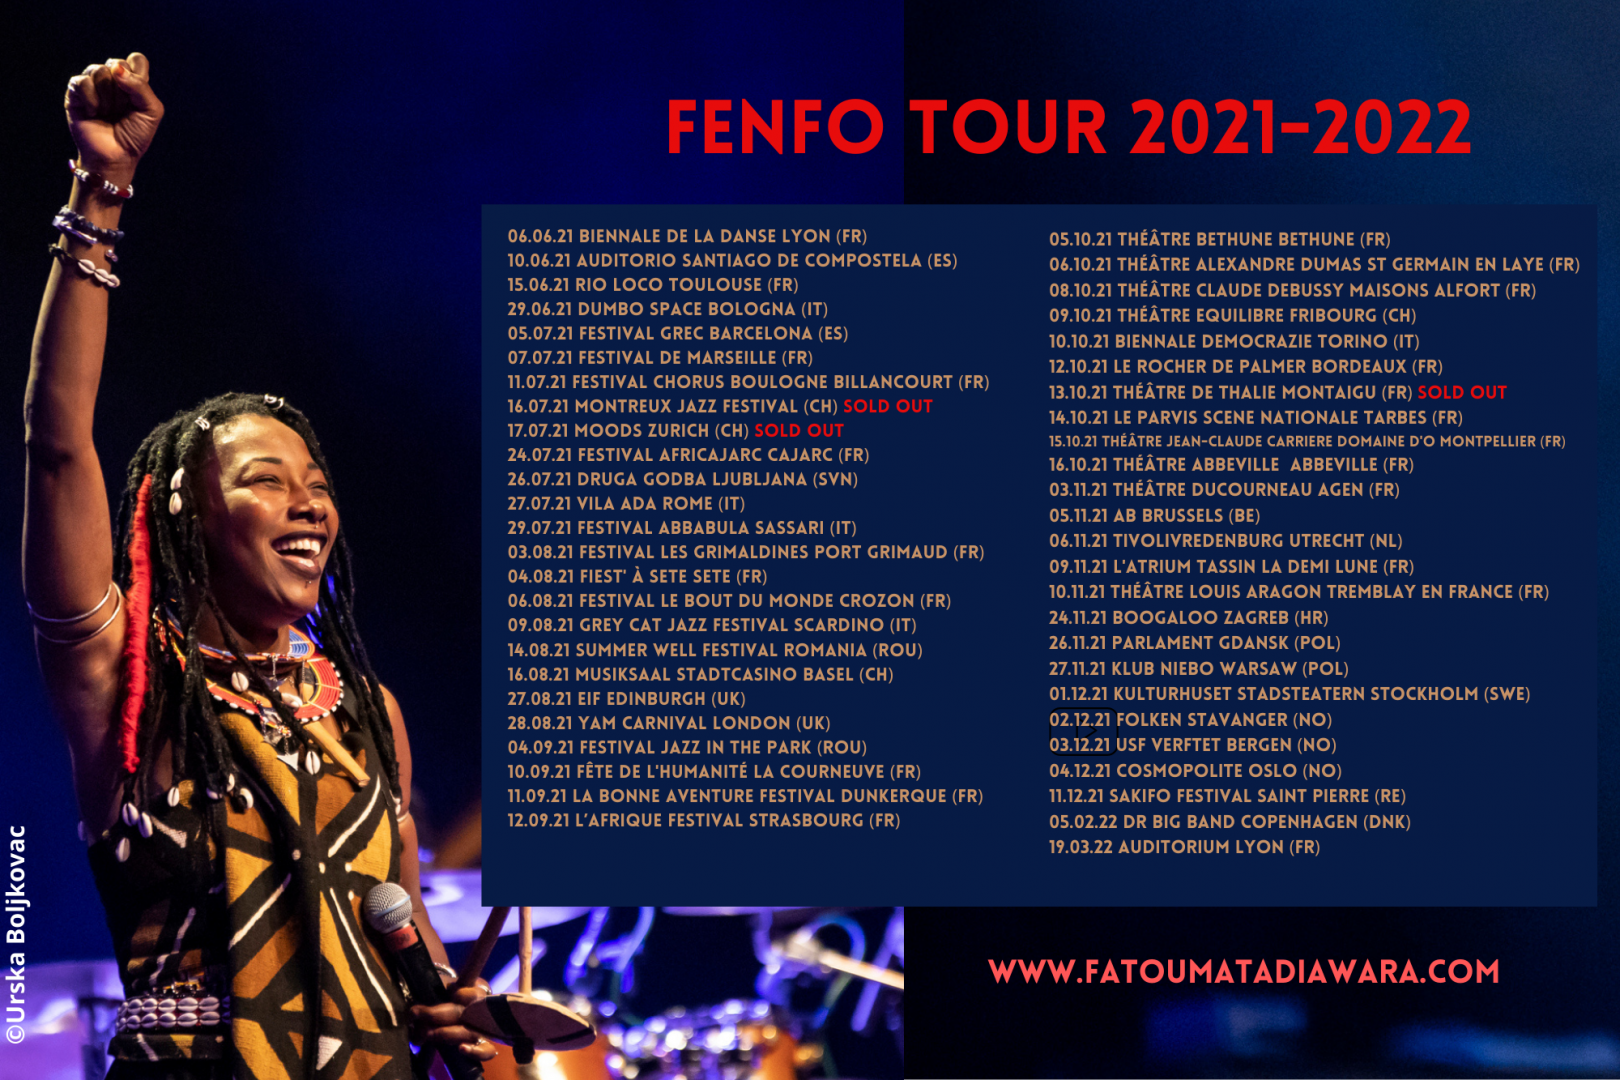 Sigue el éxito de la gira FENFO por toda Europa